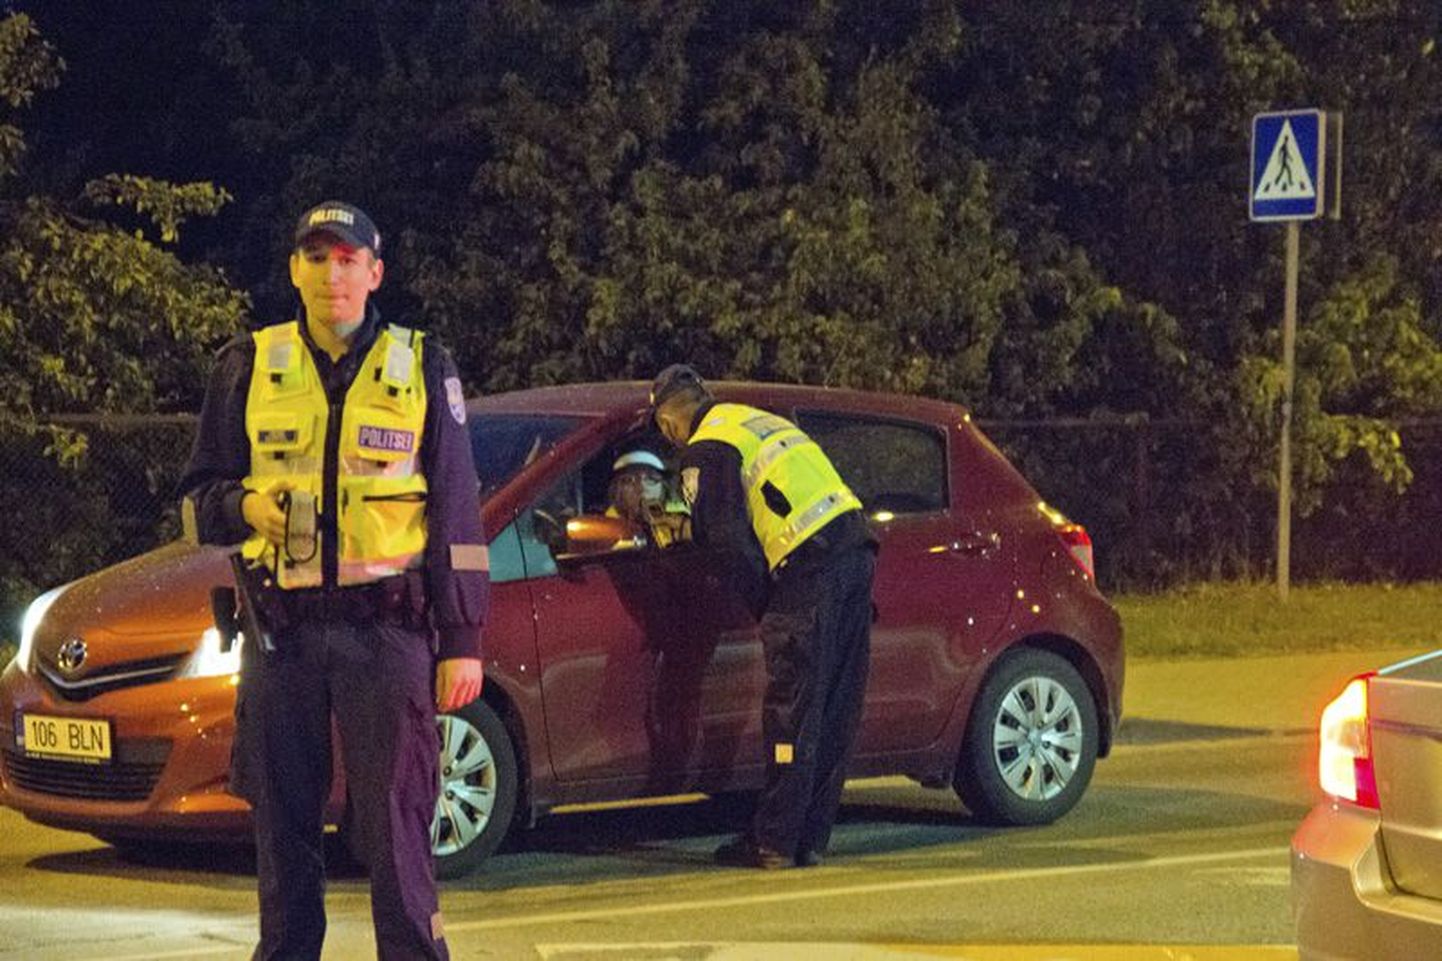 Läinud reedel tegeles politsei Rakveres end maani täis joonud meestega, samuti korraldati kontrollreid “Kõik puhuvad”, kus üks sõiduauto BMW juht üritas õige mitmel korral politseid vältida.